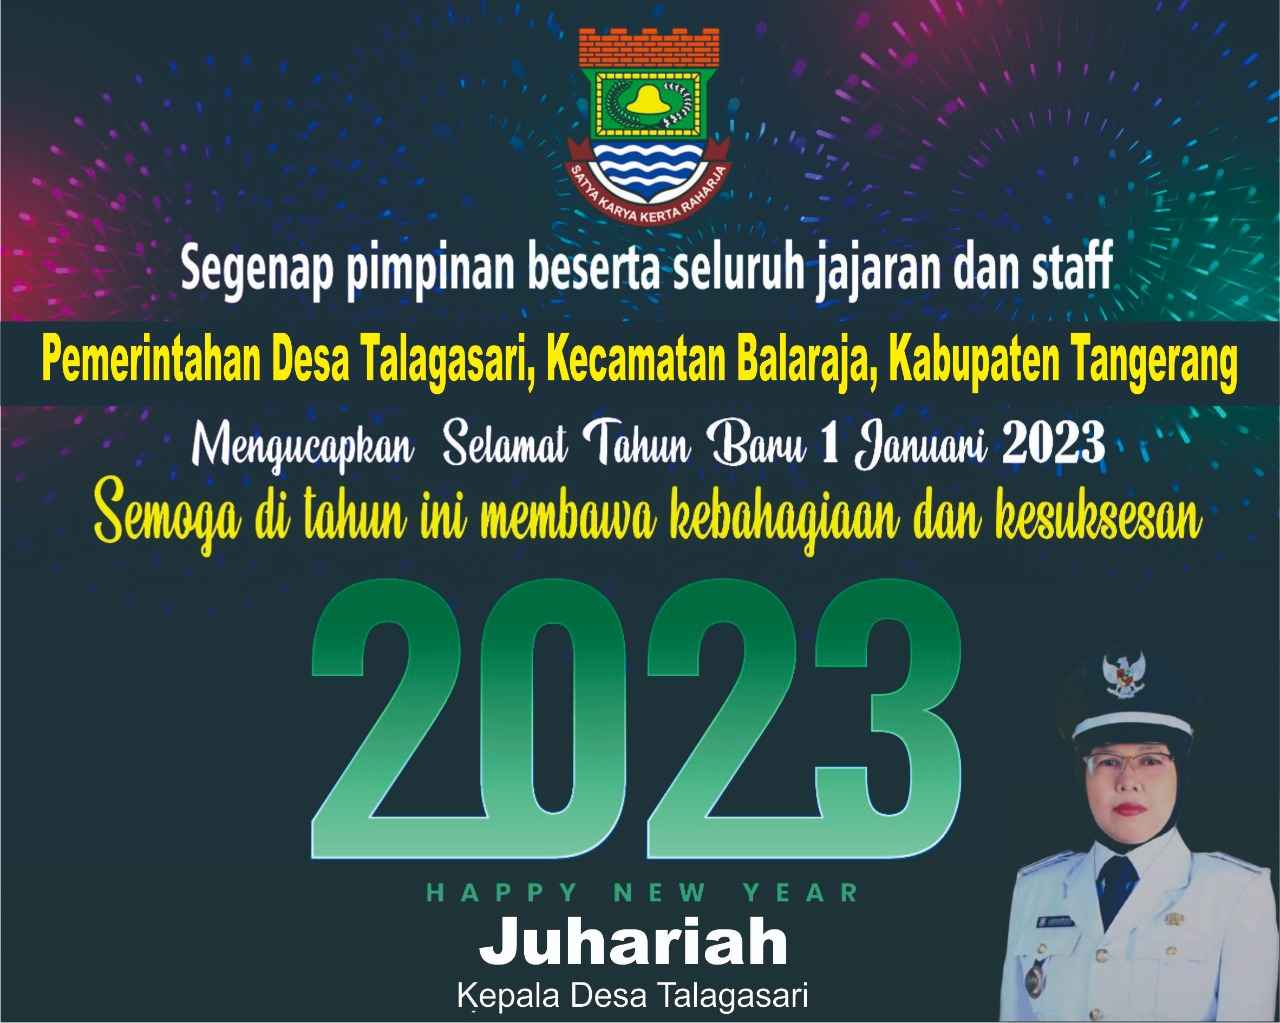 Pemerintahan Desa Talagasari, Kecamatan Balaraja, Kabupaten Tangerang Mengucapkan Selamat Tahun Baru 1 Januari 2023